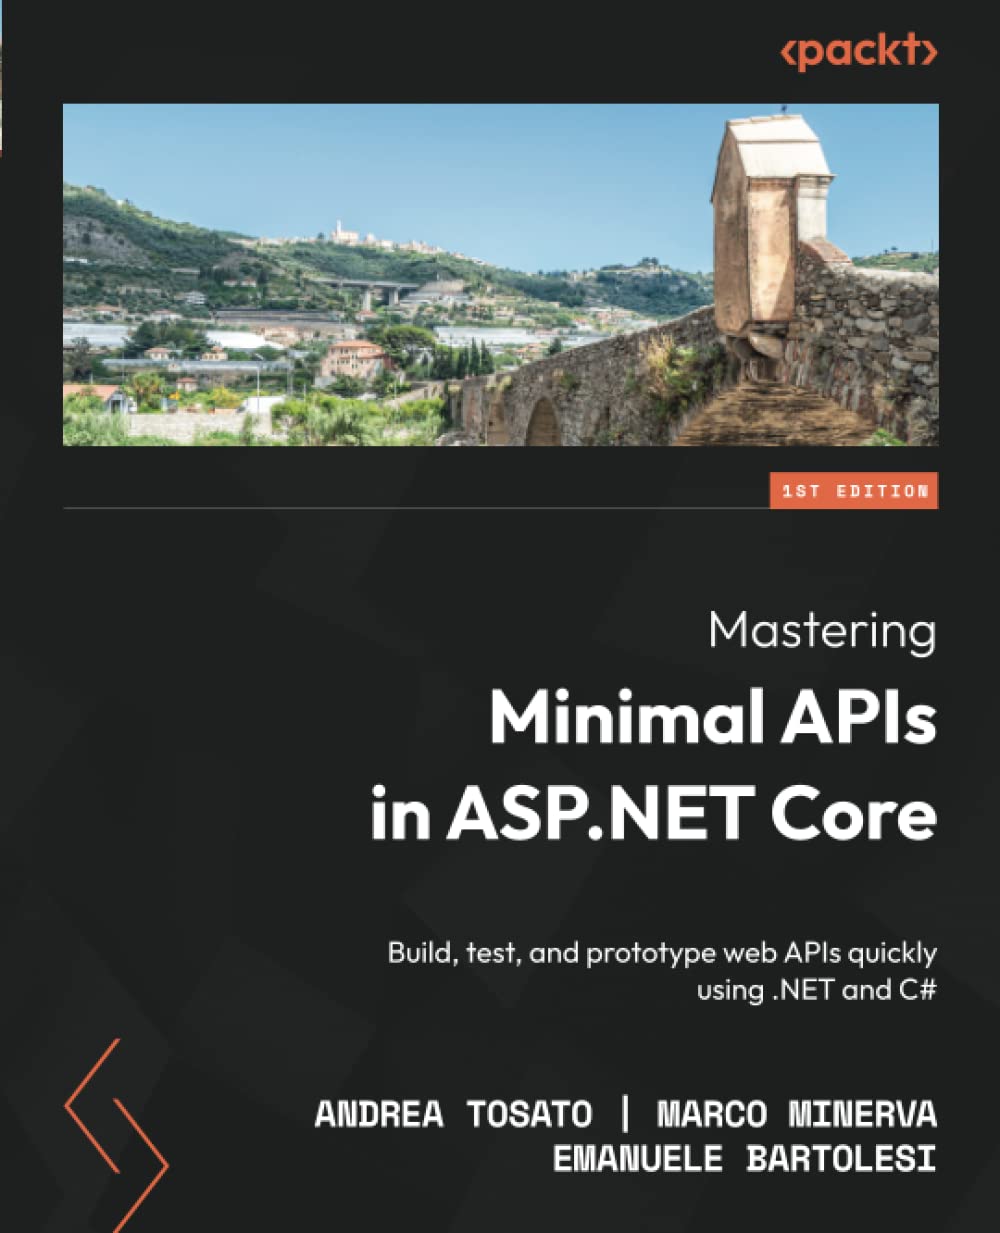 Minimal APIs with .NET